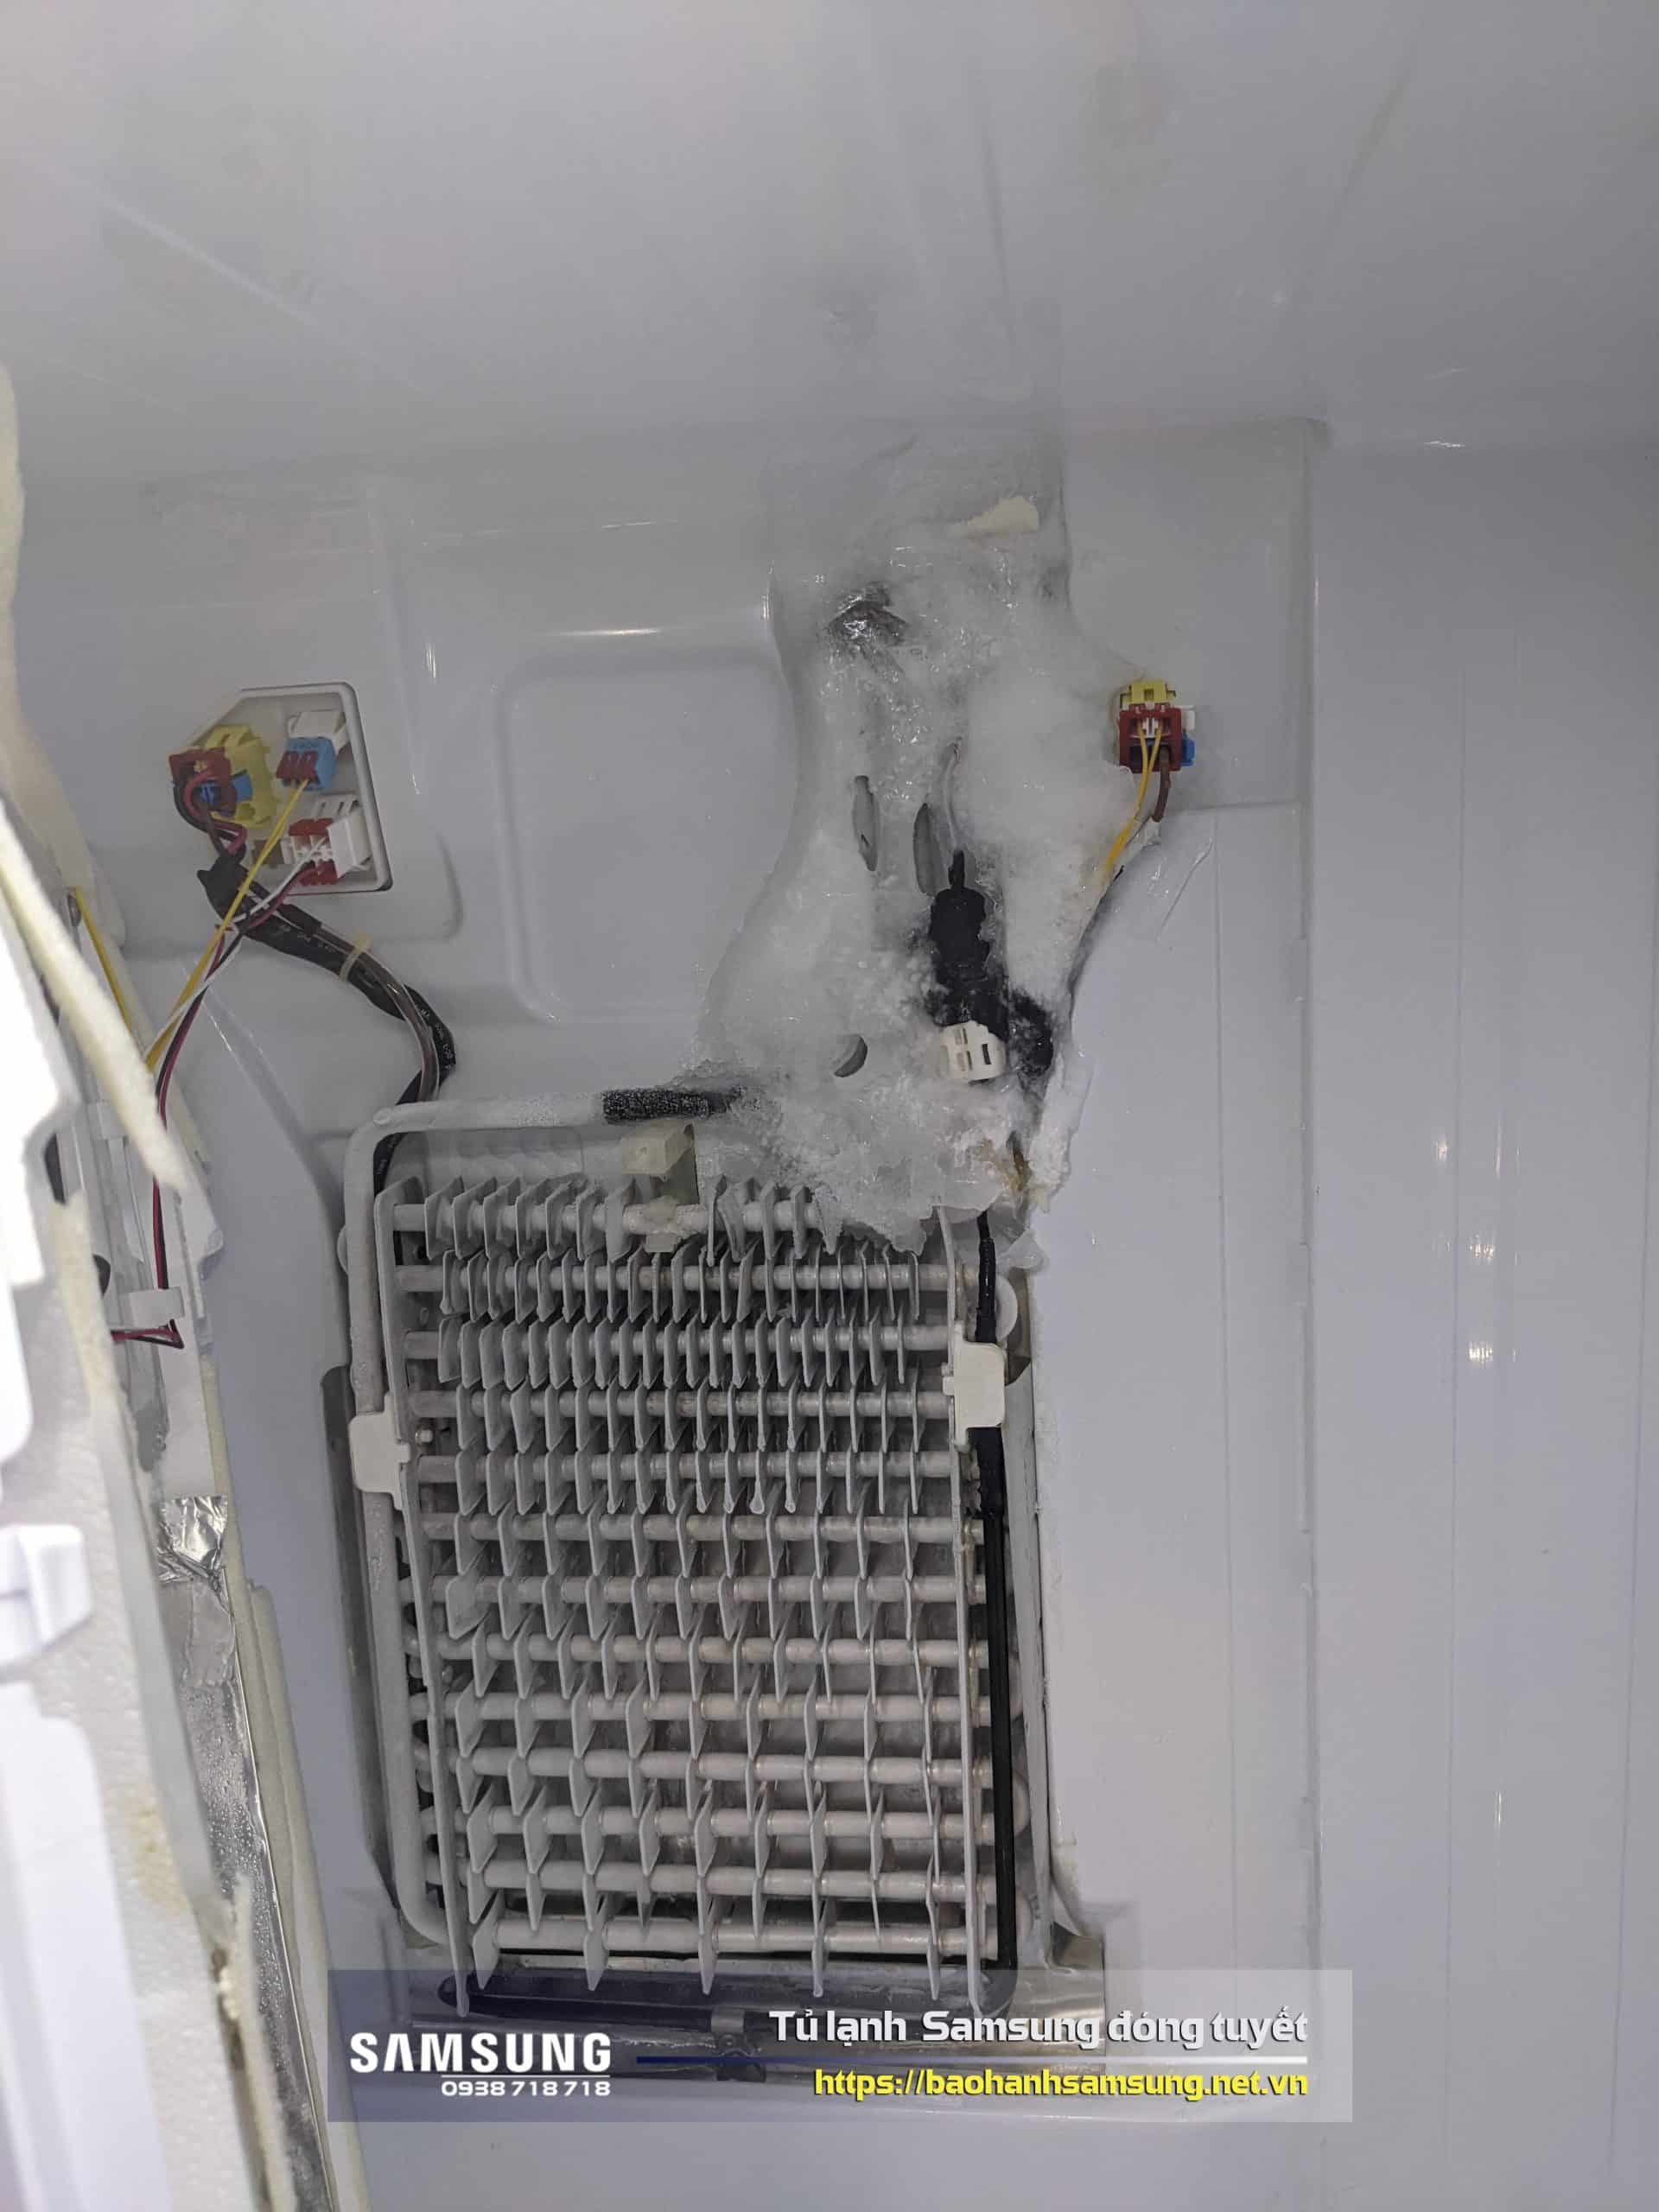 Nếu không được rã đông, tủ lạnh sẽ hoạt động kém hiệu quả